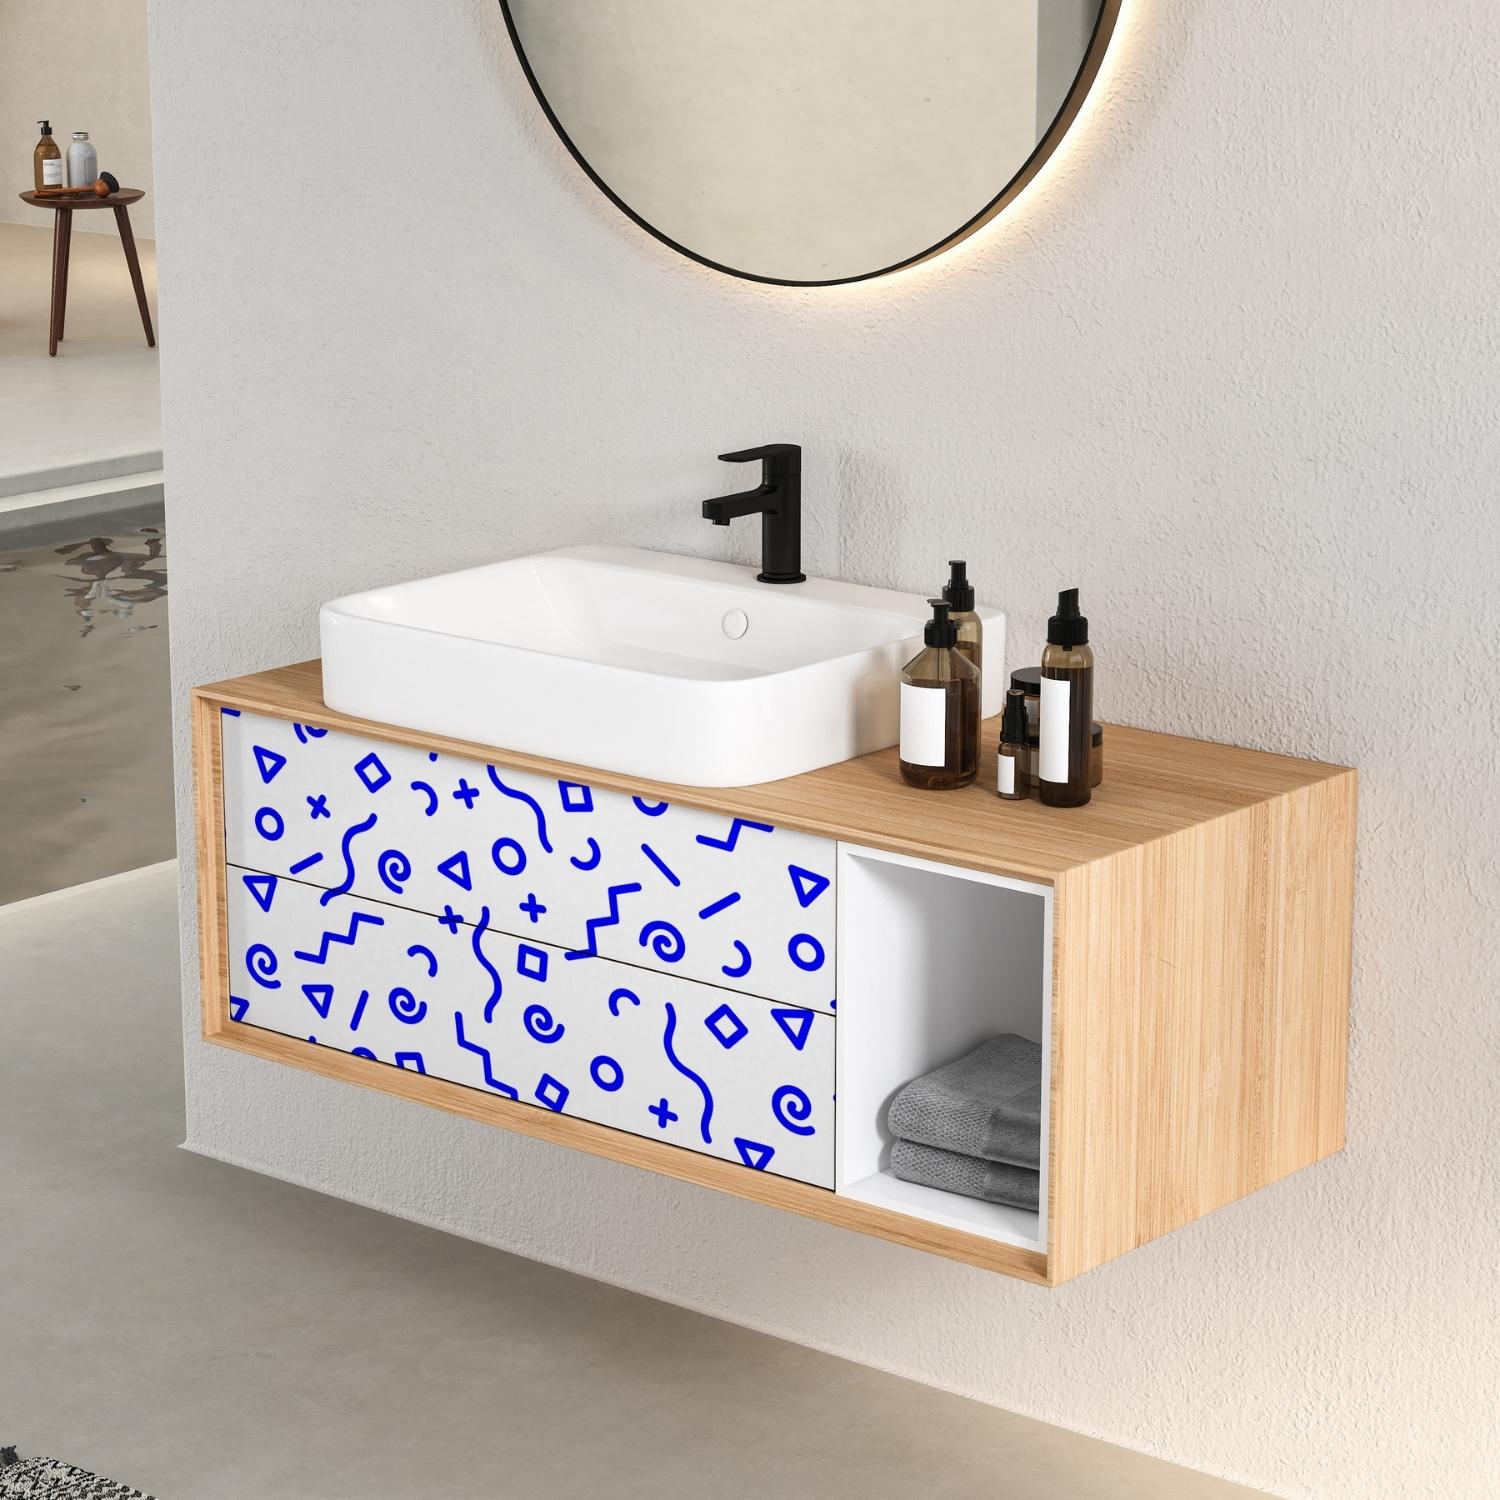 PP5-papier-peint-adhesif-decoratif-revetement-vinyle-motifs-géométriques-bleu-renovation-meuble-mur-3